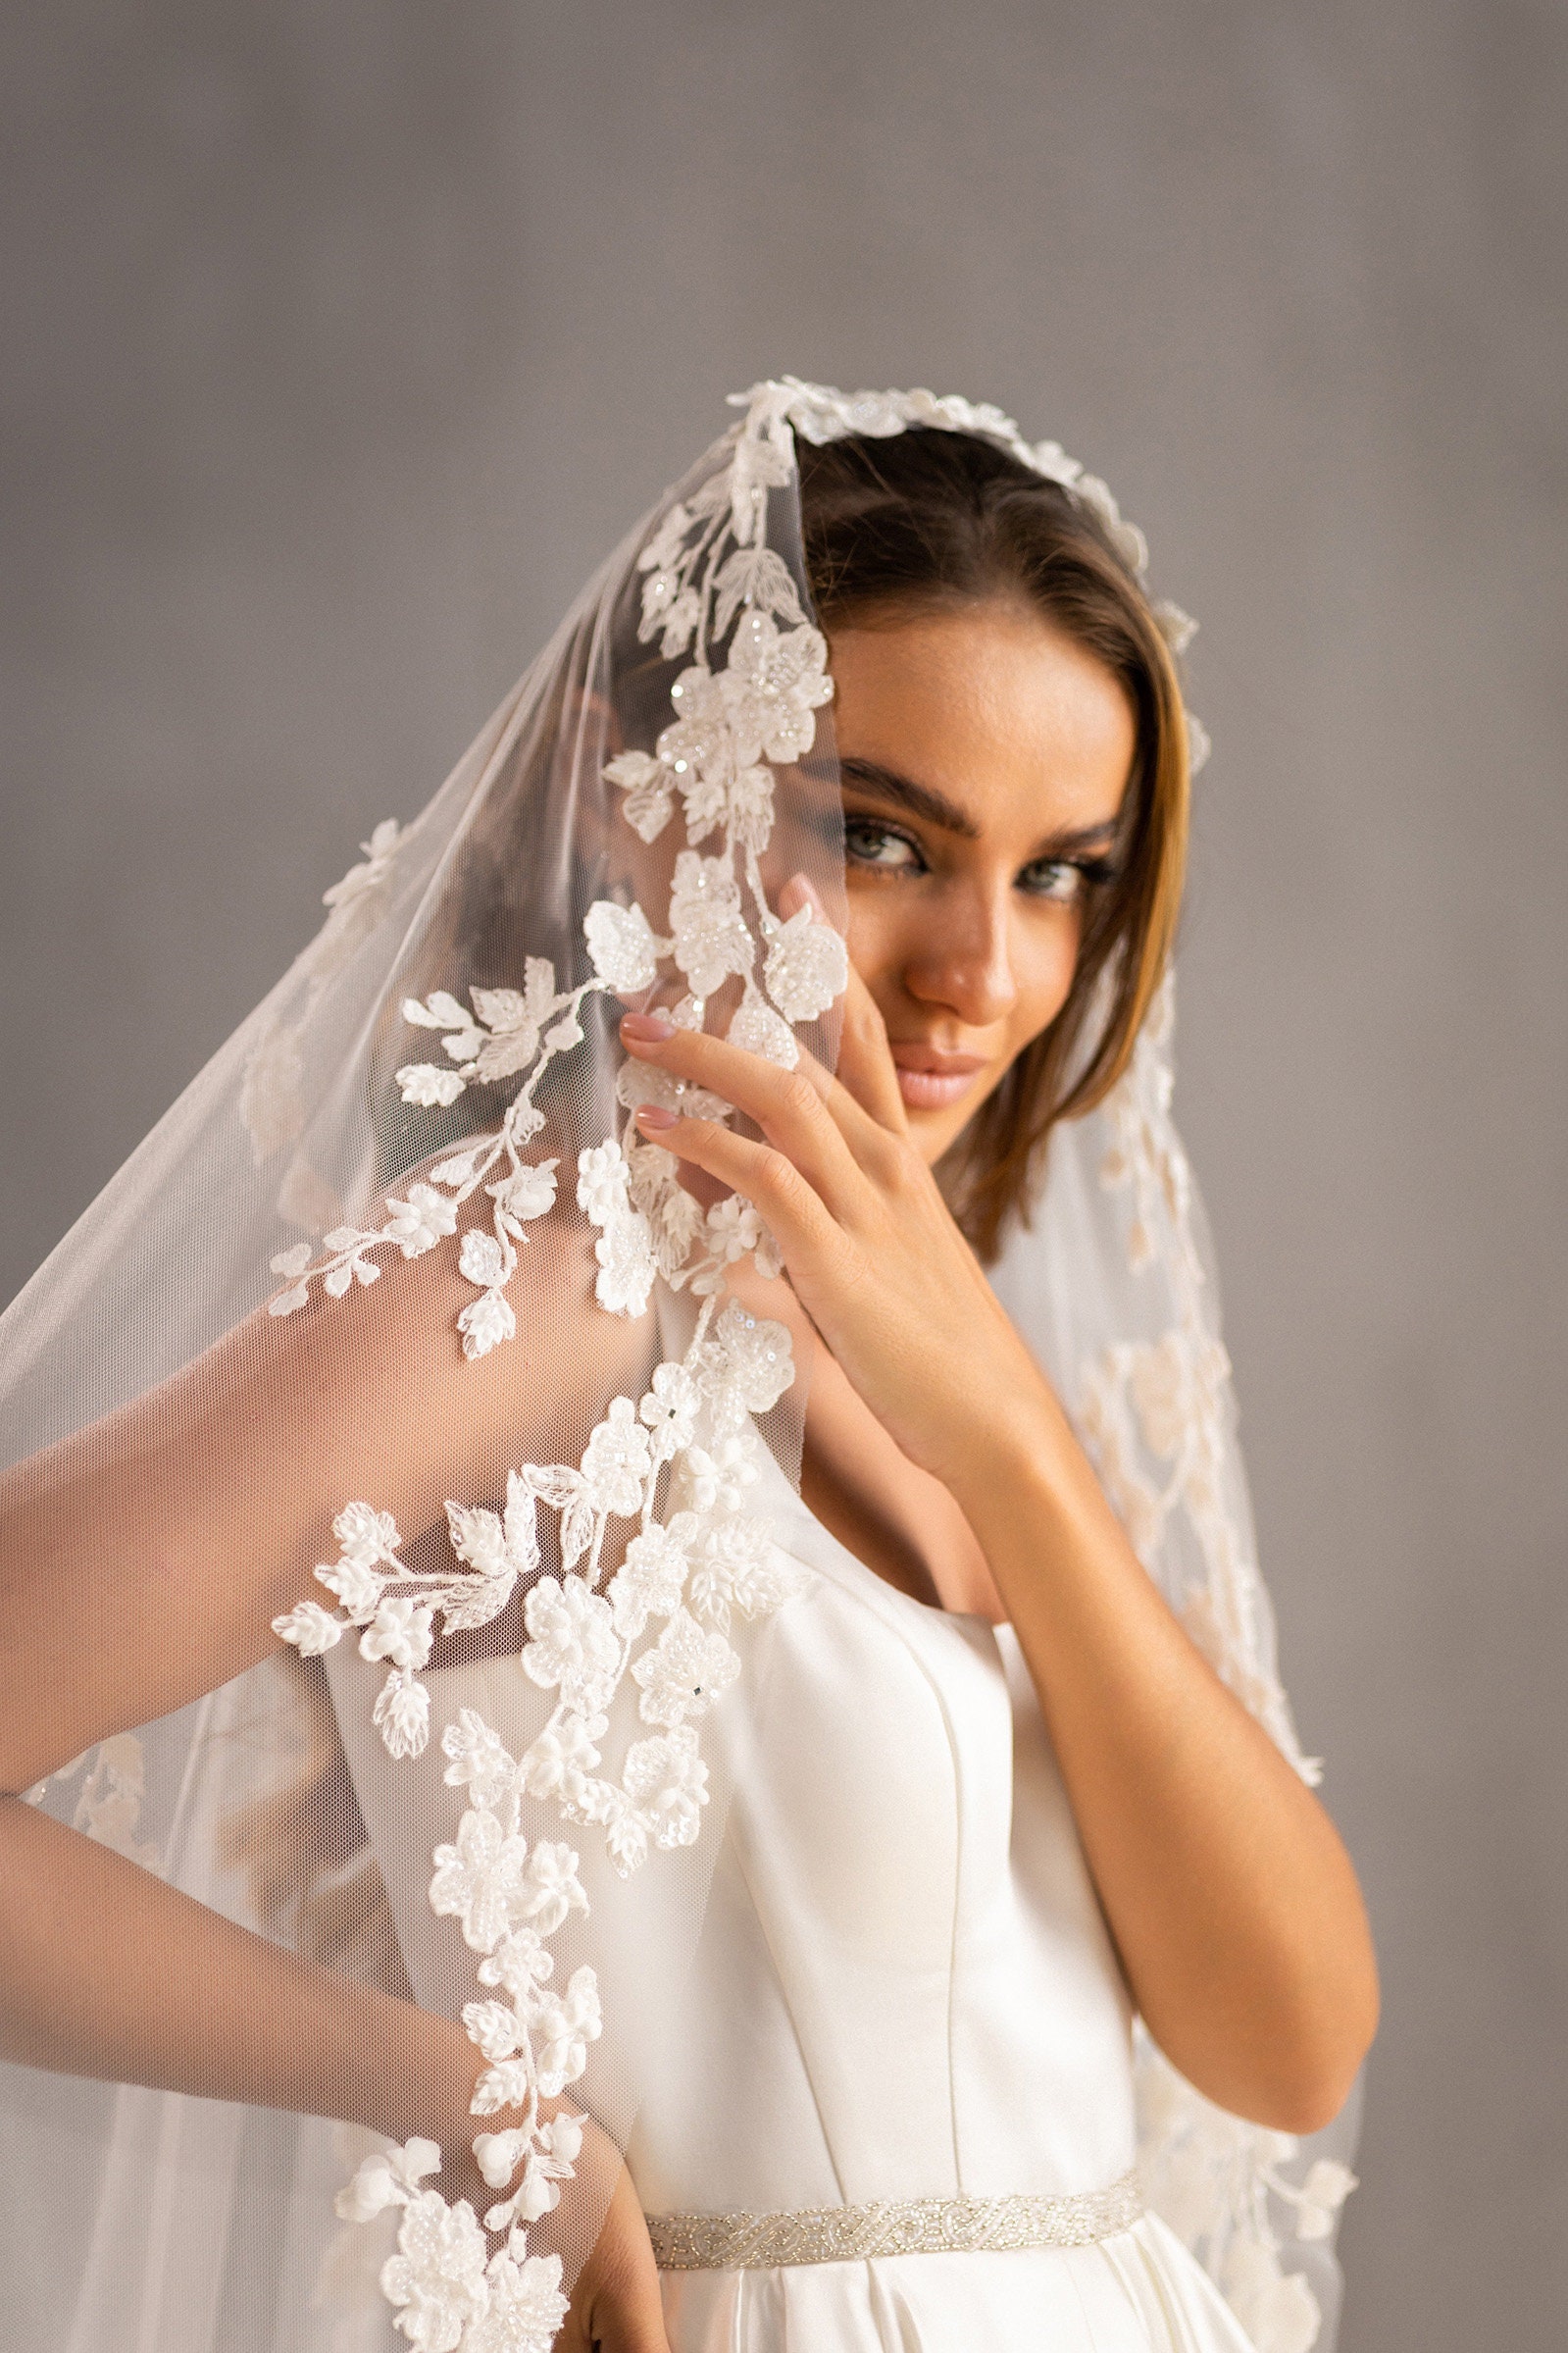 Lace Wedding Veils at Affordable Elegance Bridal